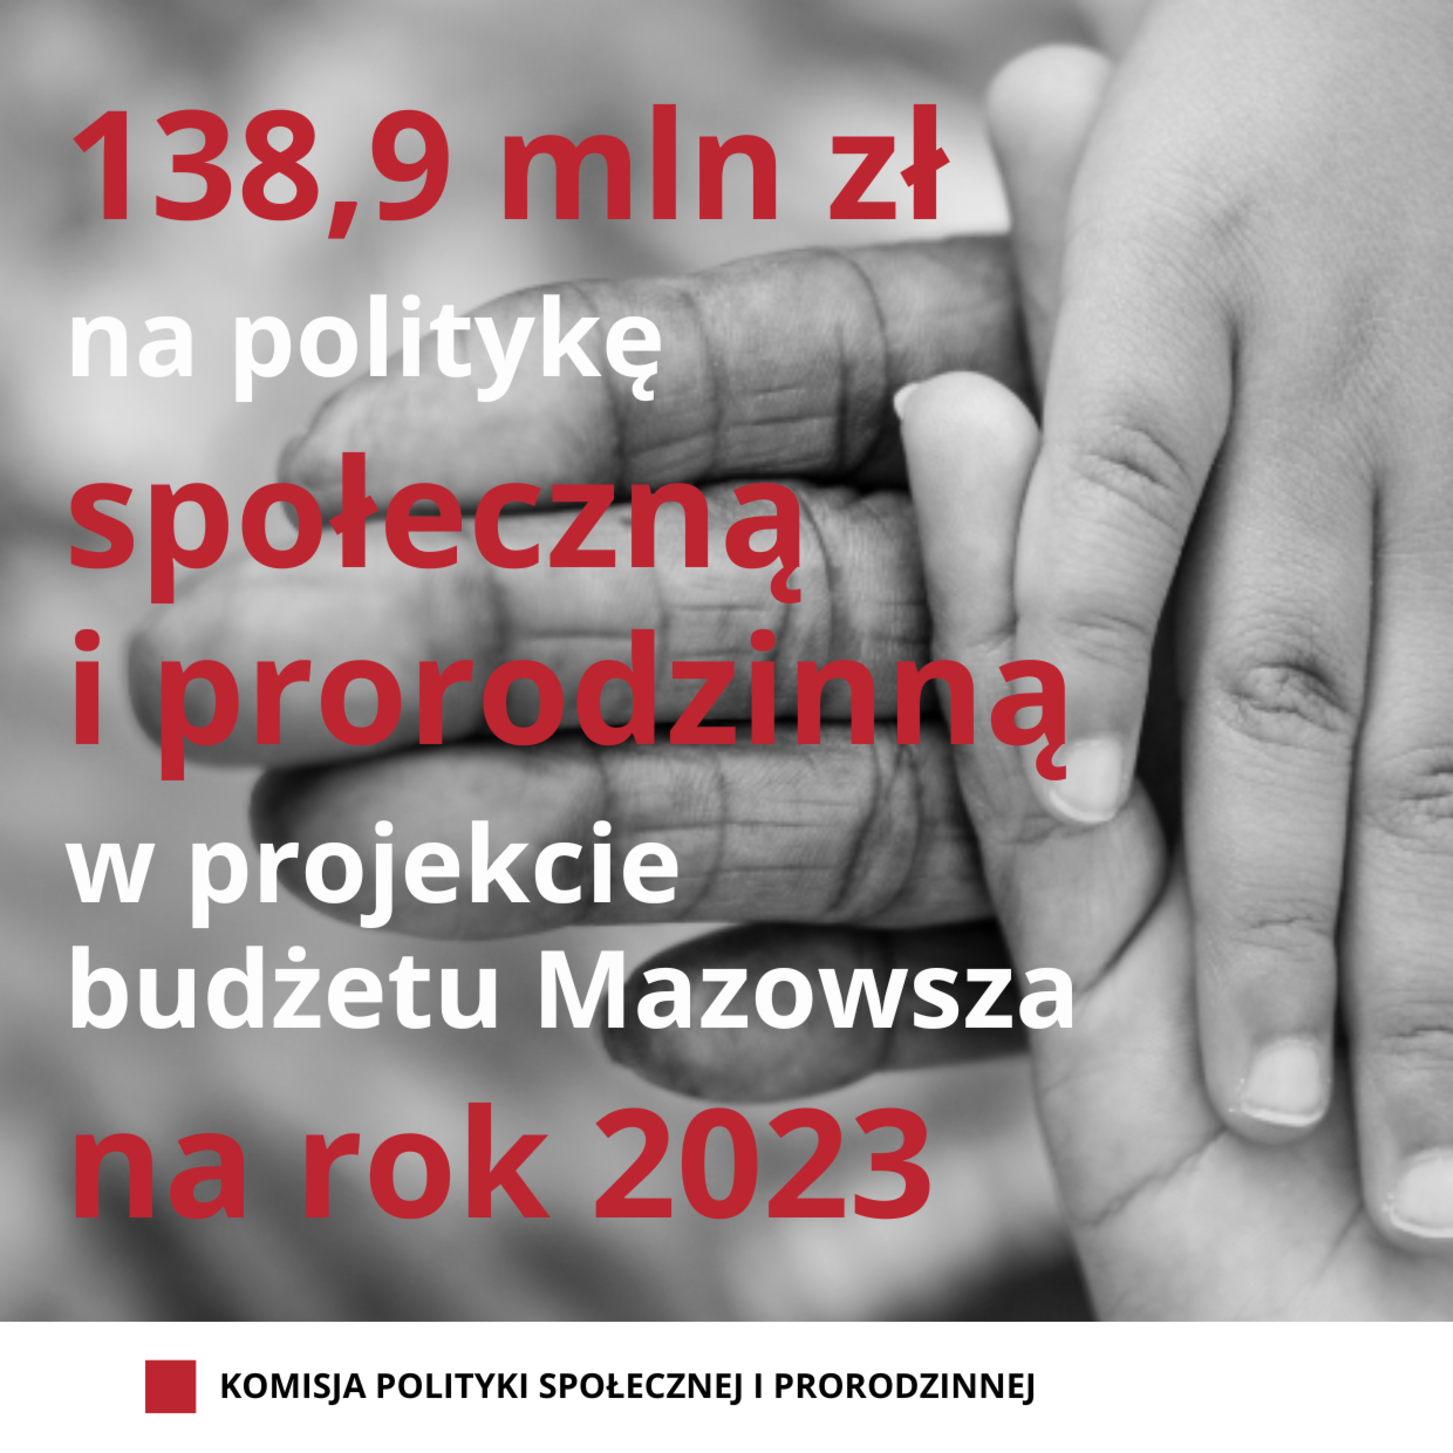 Grafika z informacją o przeznaczeniu 138,9 mln zł na politykę prorodzinną